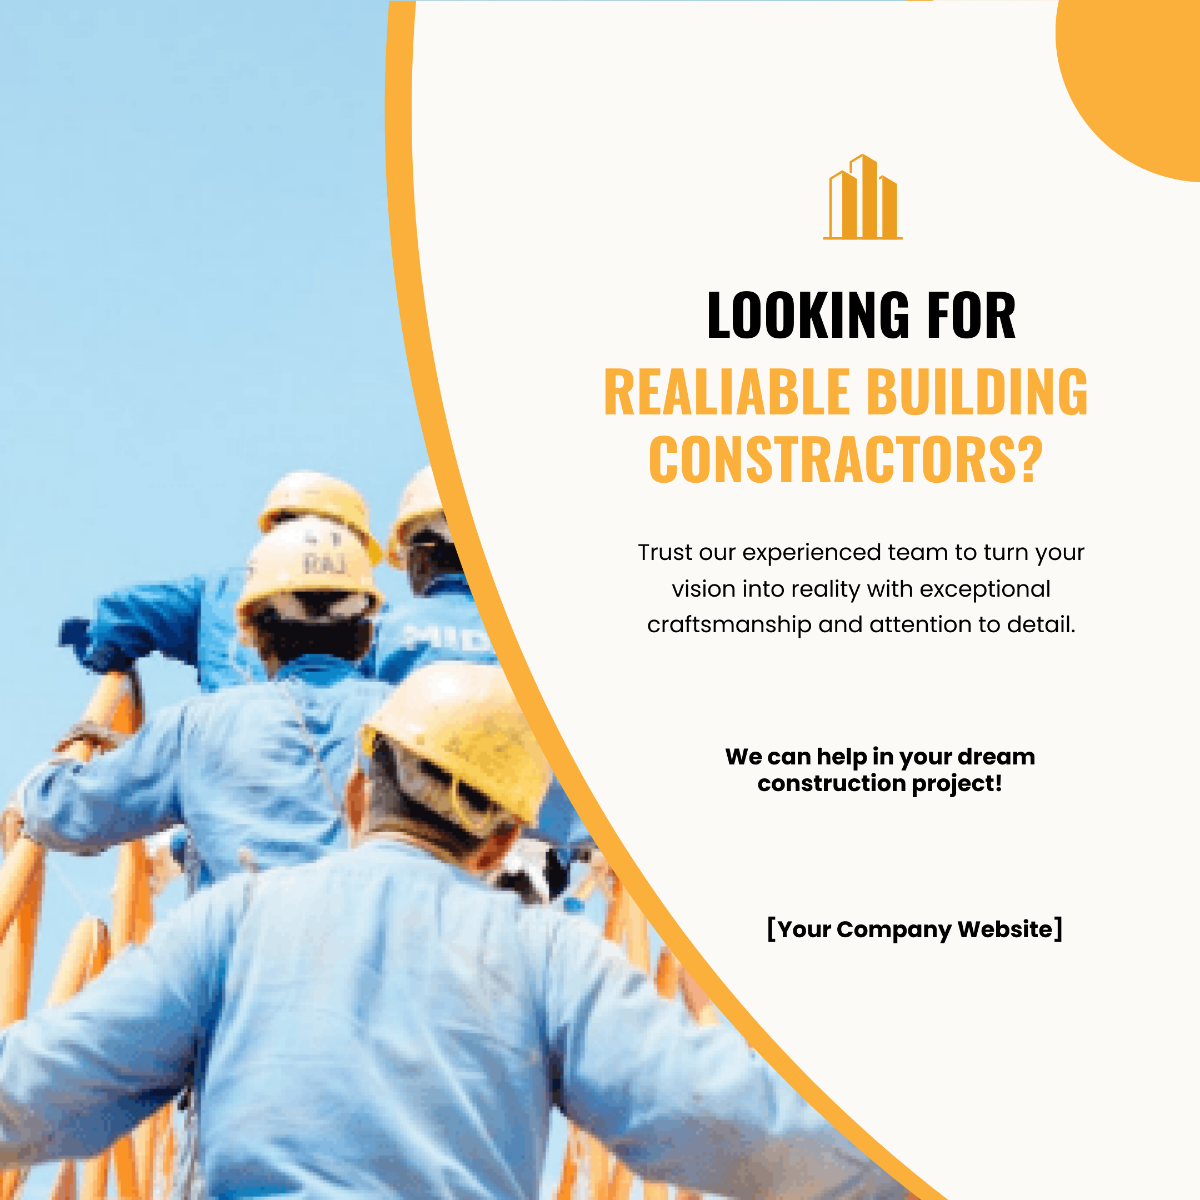 Free Building Contractors Facebook Ad